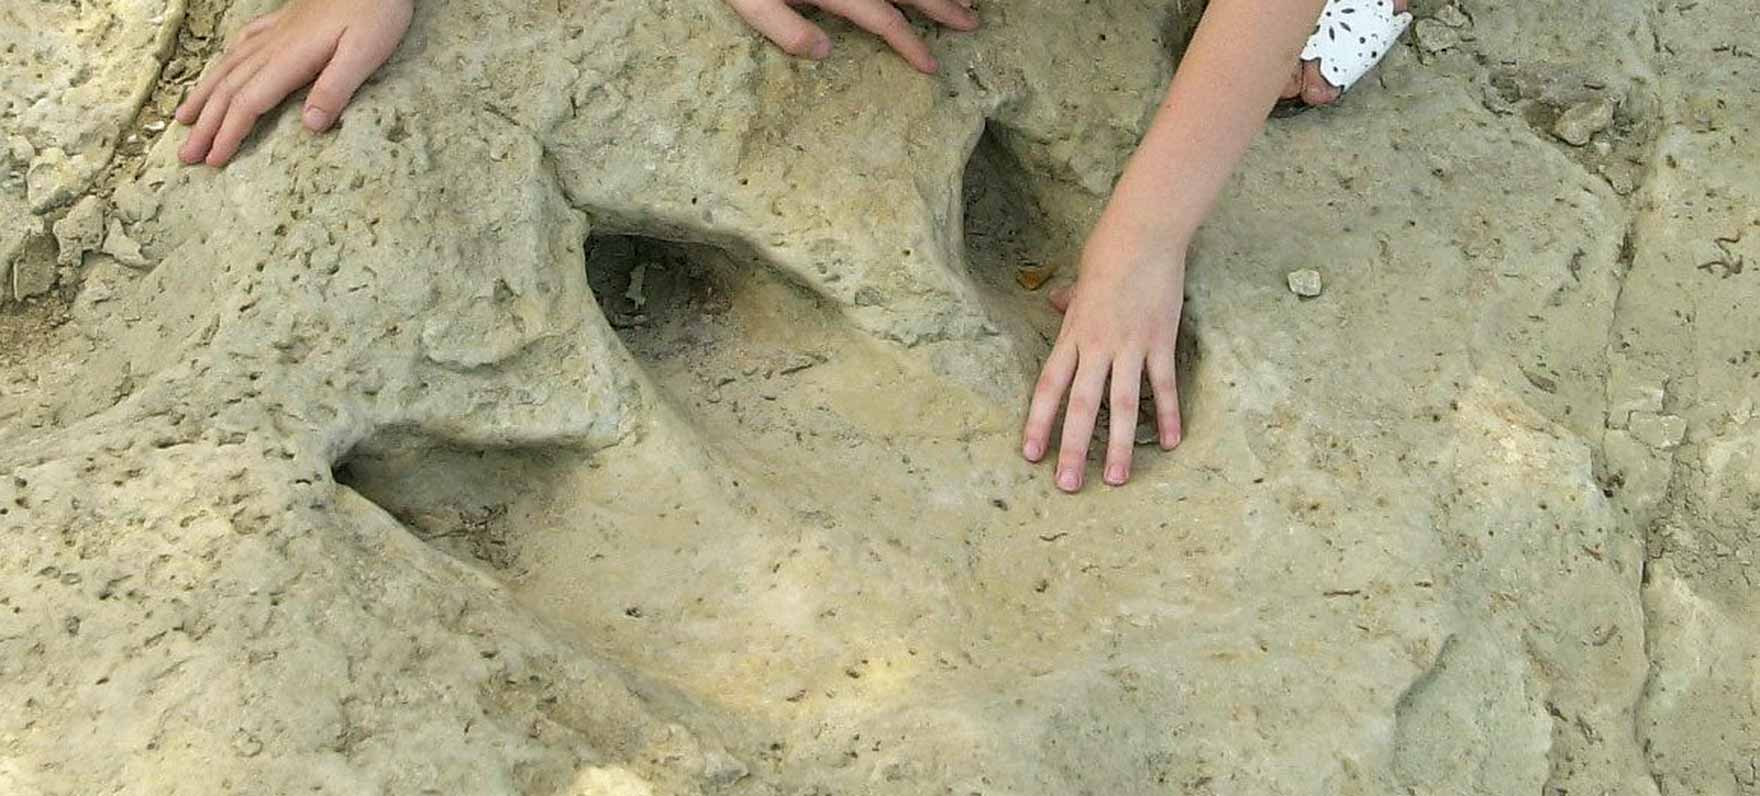 Dinosaur Footprint at Dinosaur Valley State Park